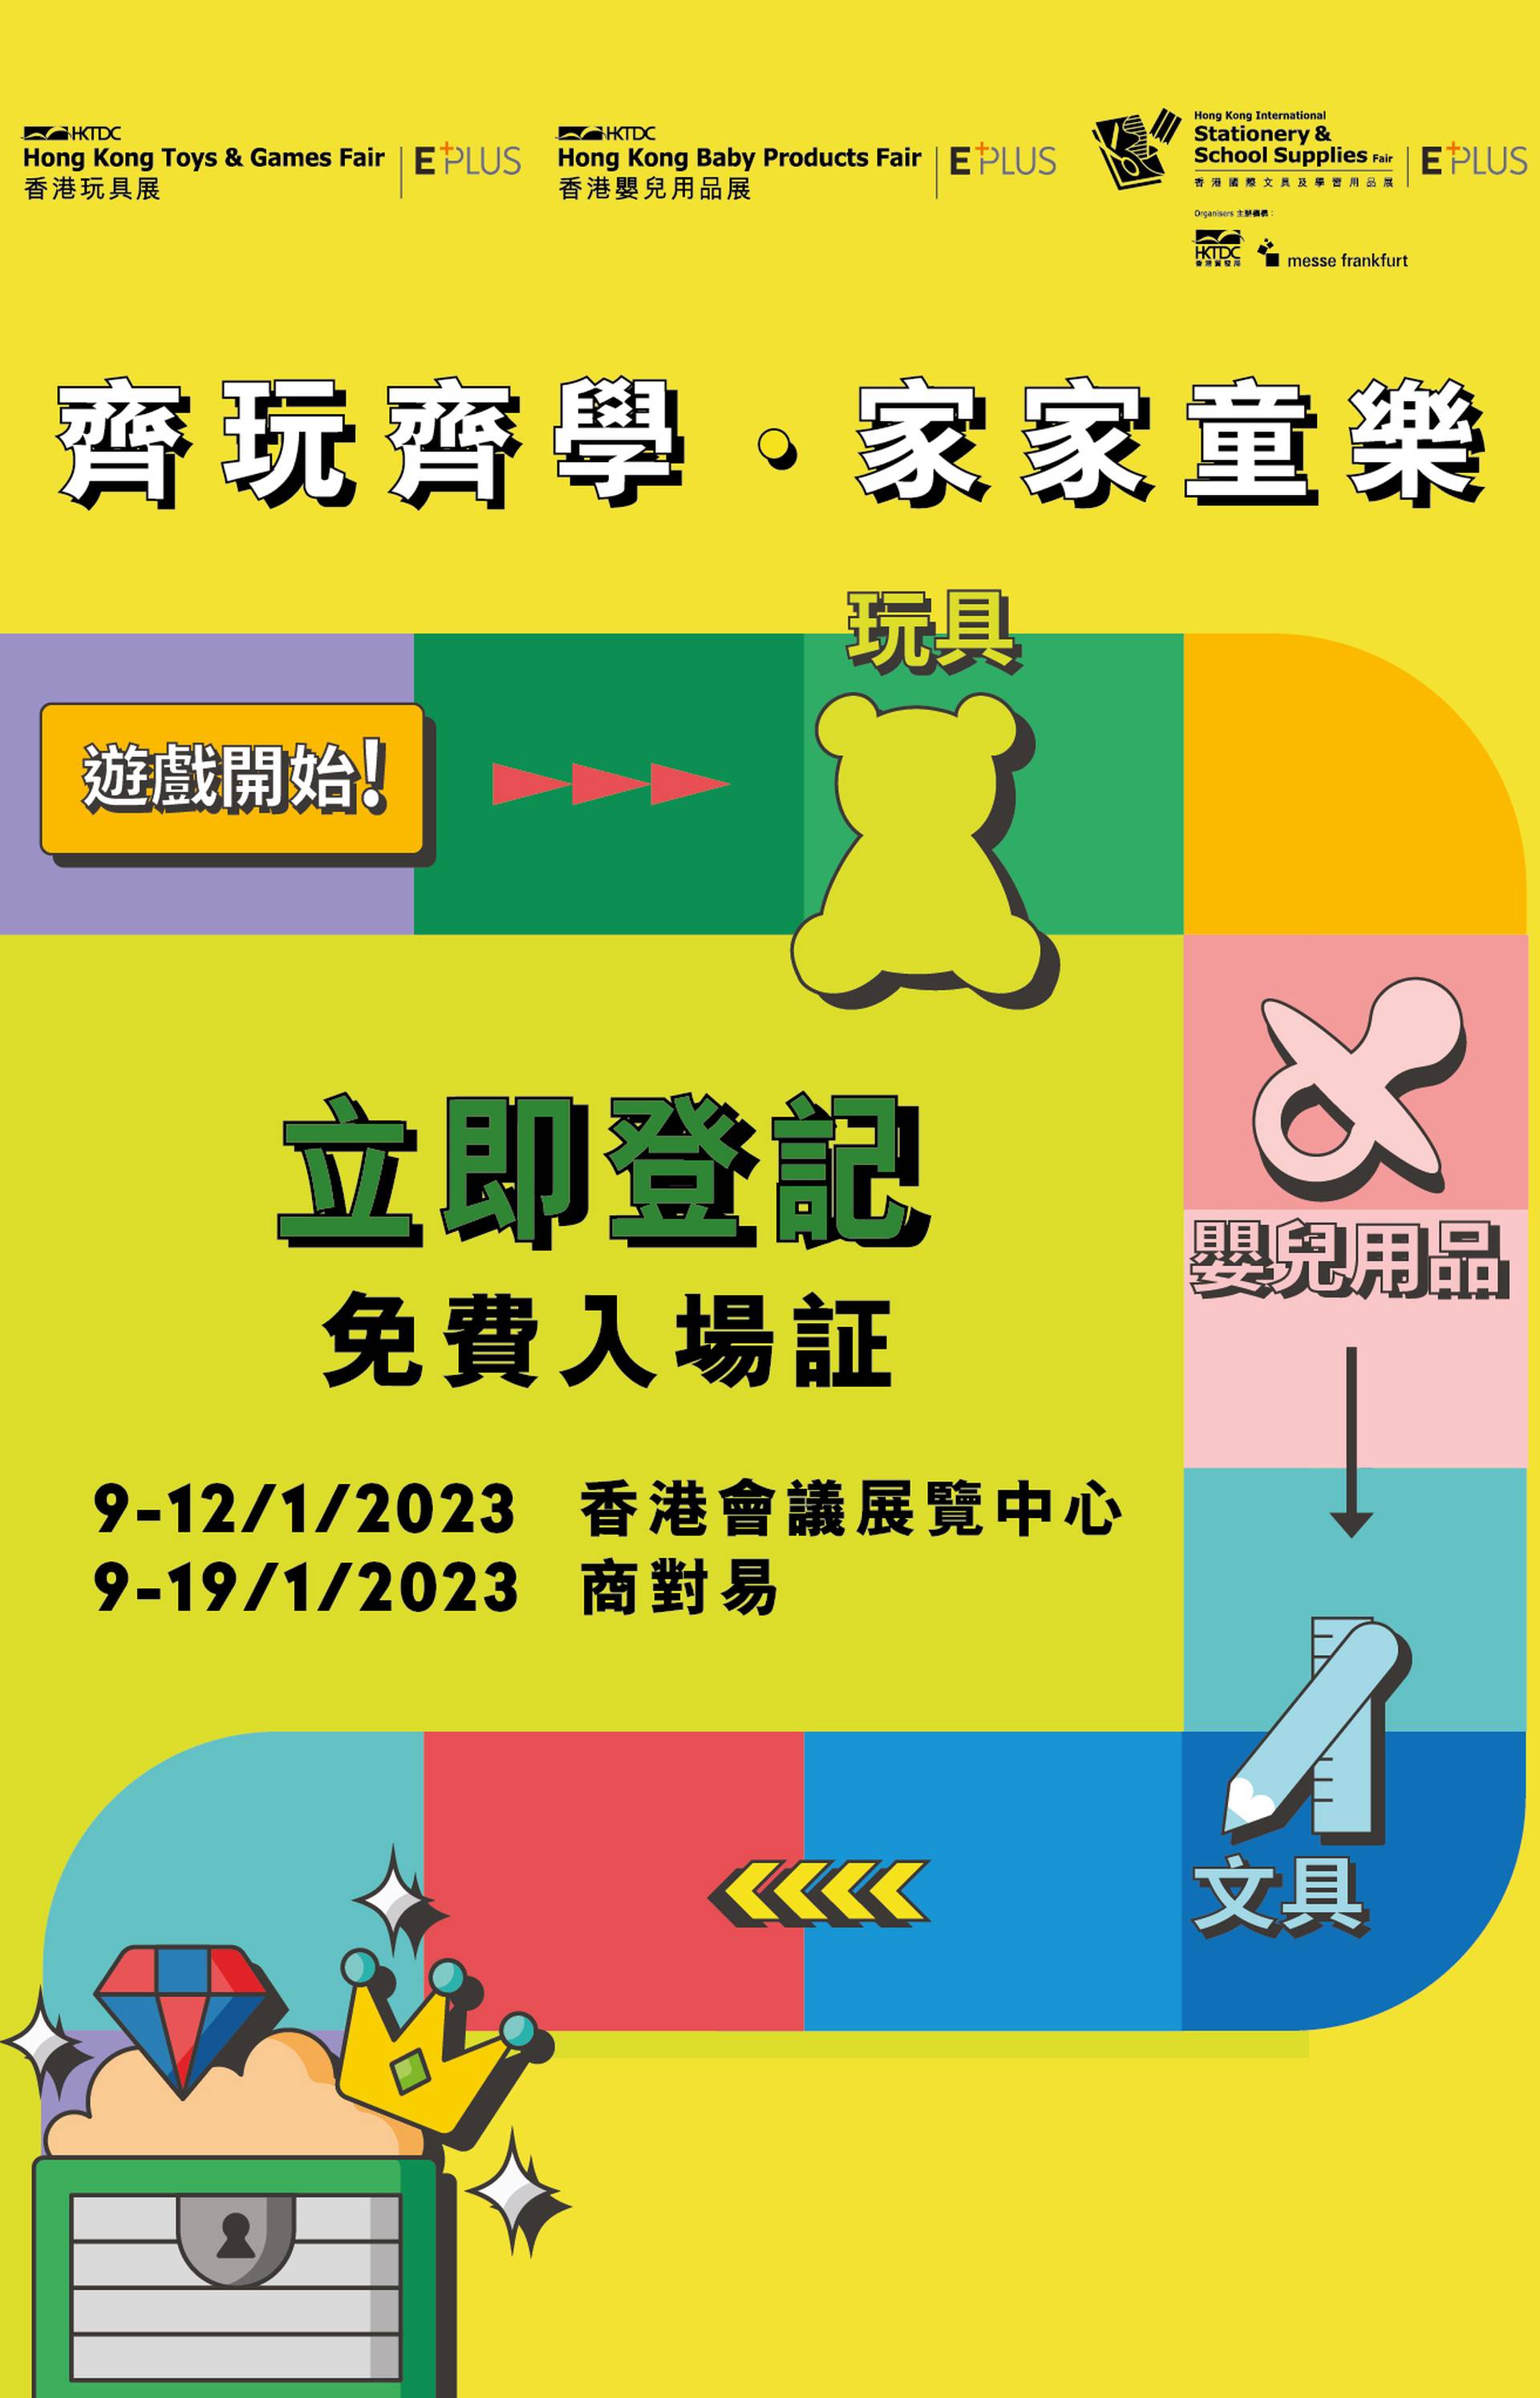 香港貿發局香港玩具展及同期展覽